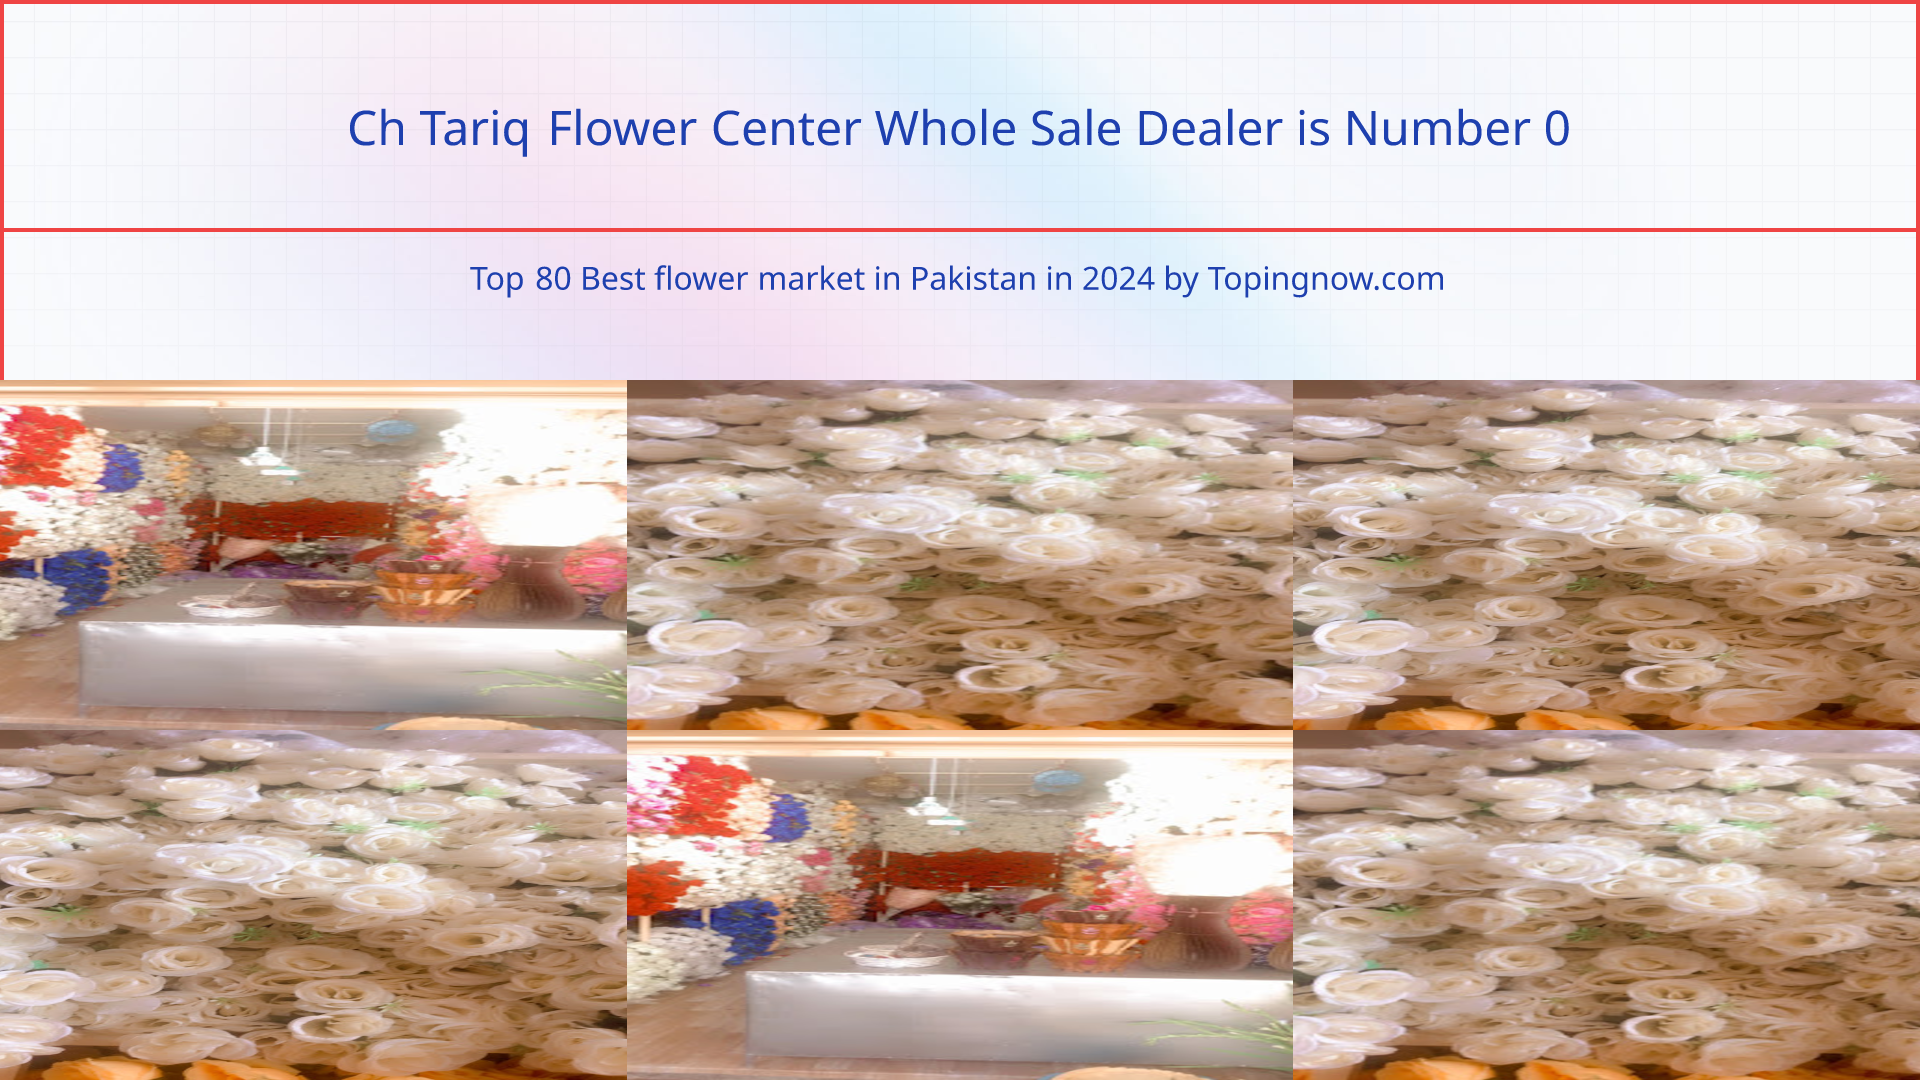 Ch Tariq Flower Center Whole Sale Dealer: Top 80 Best flower market in Pakistan in 2024